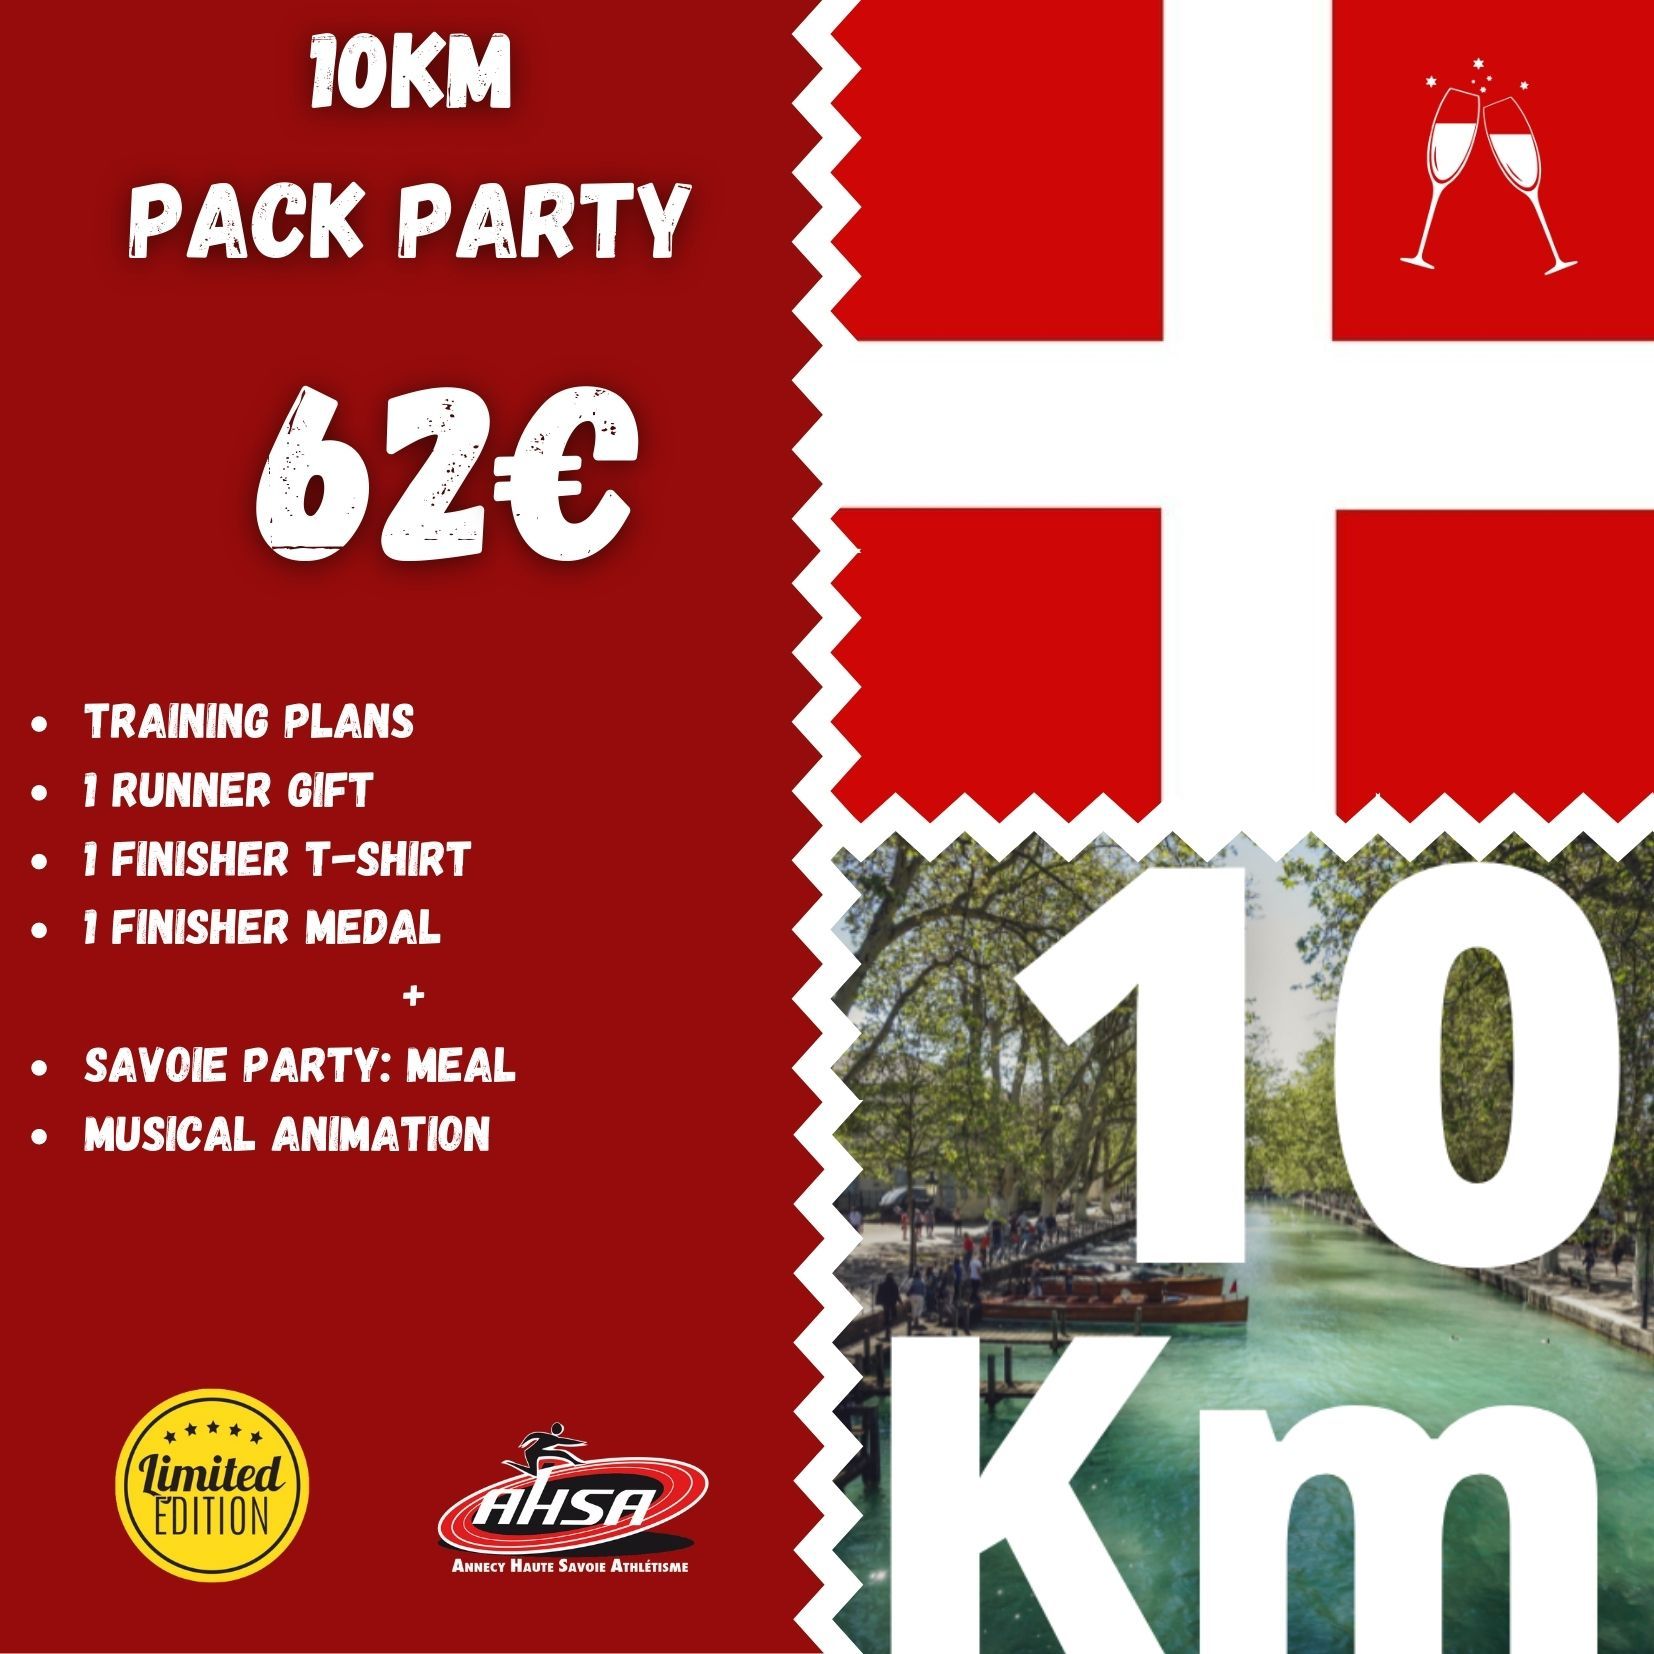 10km, Annecy lake, running, Haute-Savoie, Rhône Alpes, France, ASHA, Annecy Haute-Savoie Athletism